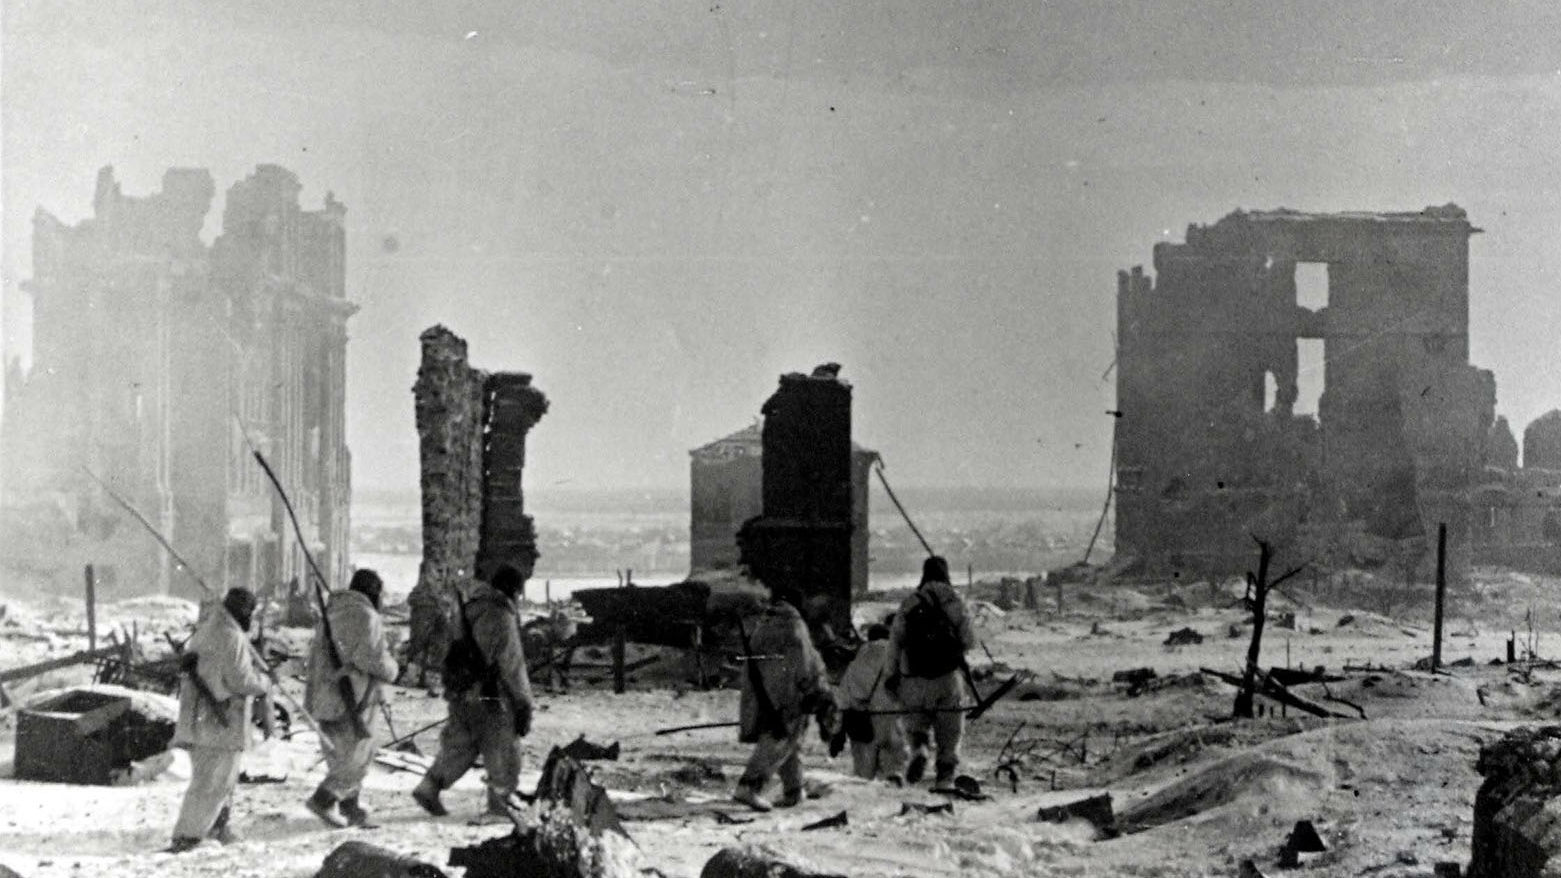 Batalla de Stalingrado - Página 3 ZDRF6MNDAZBPHDNJEY7NYWC6PY